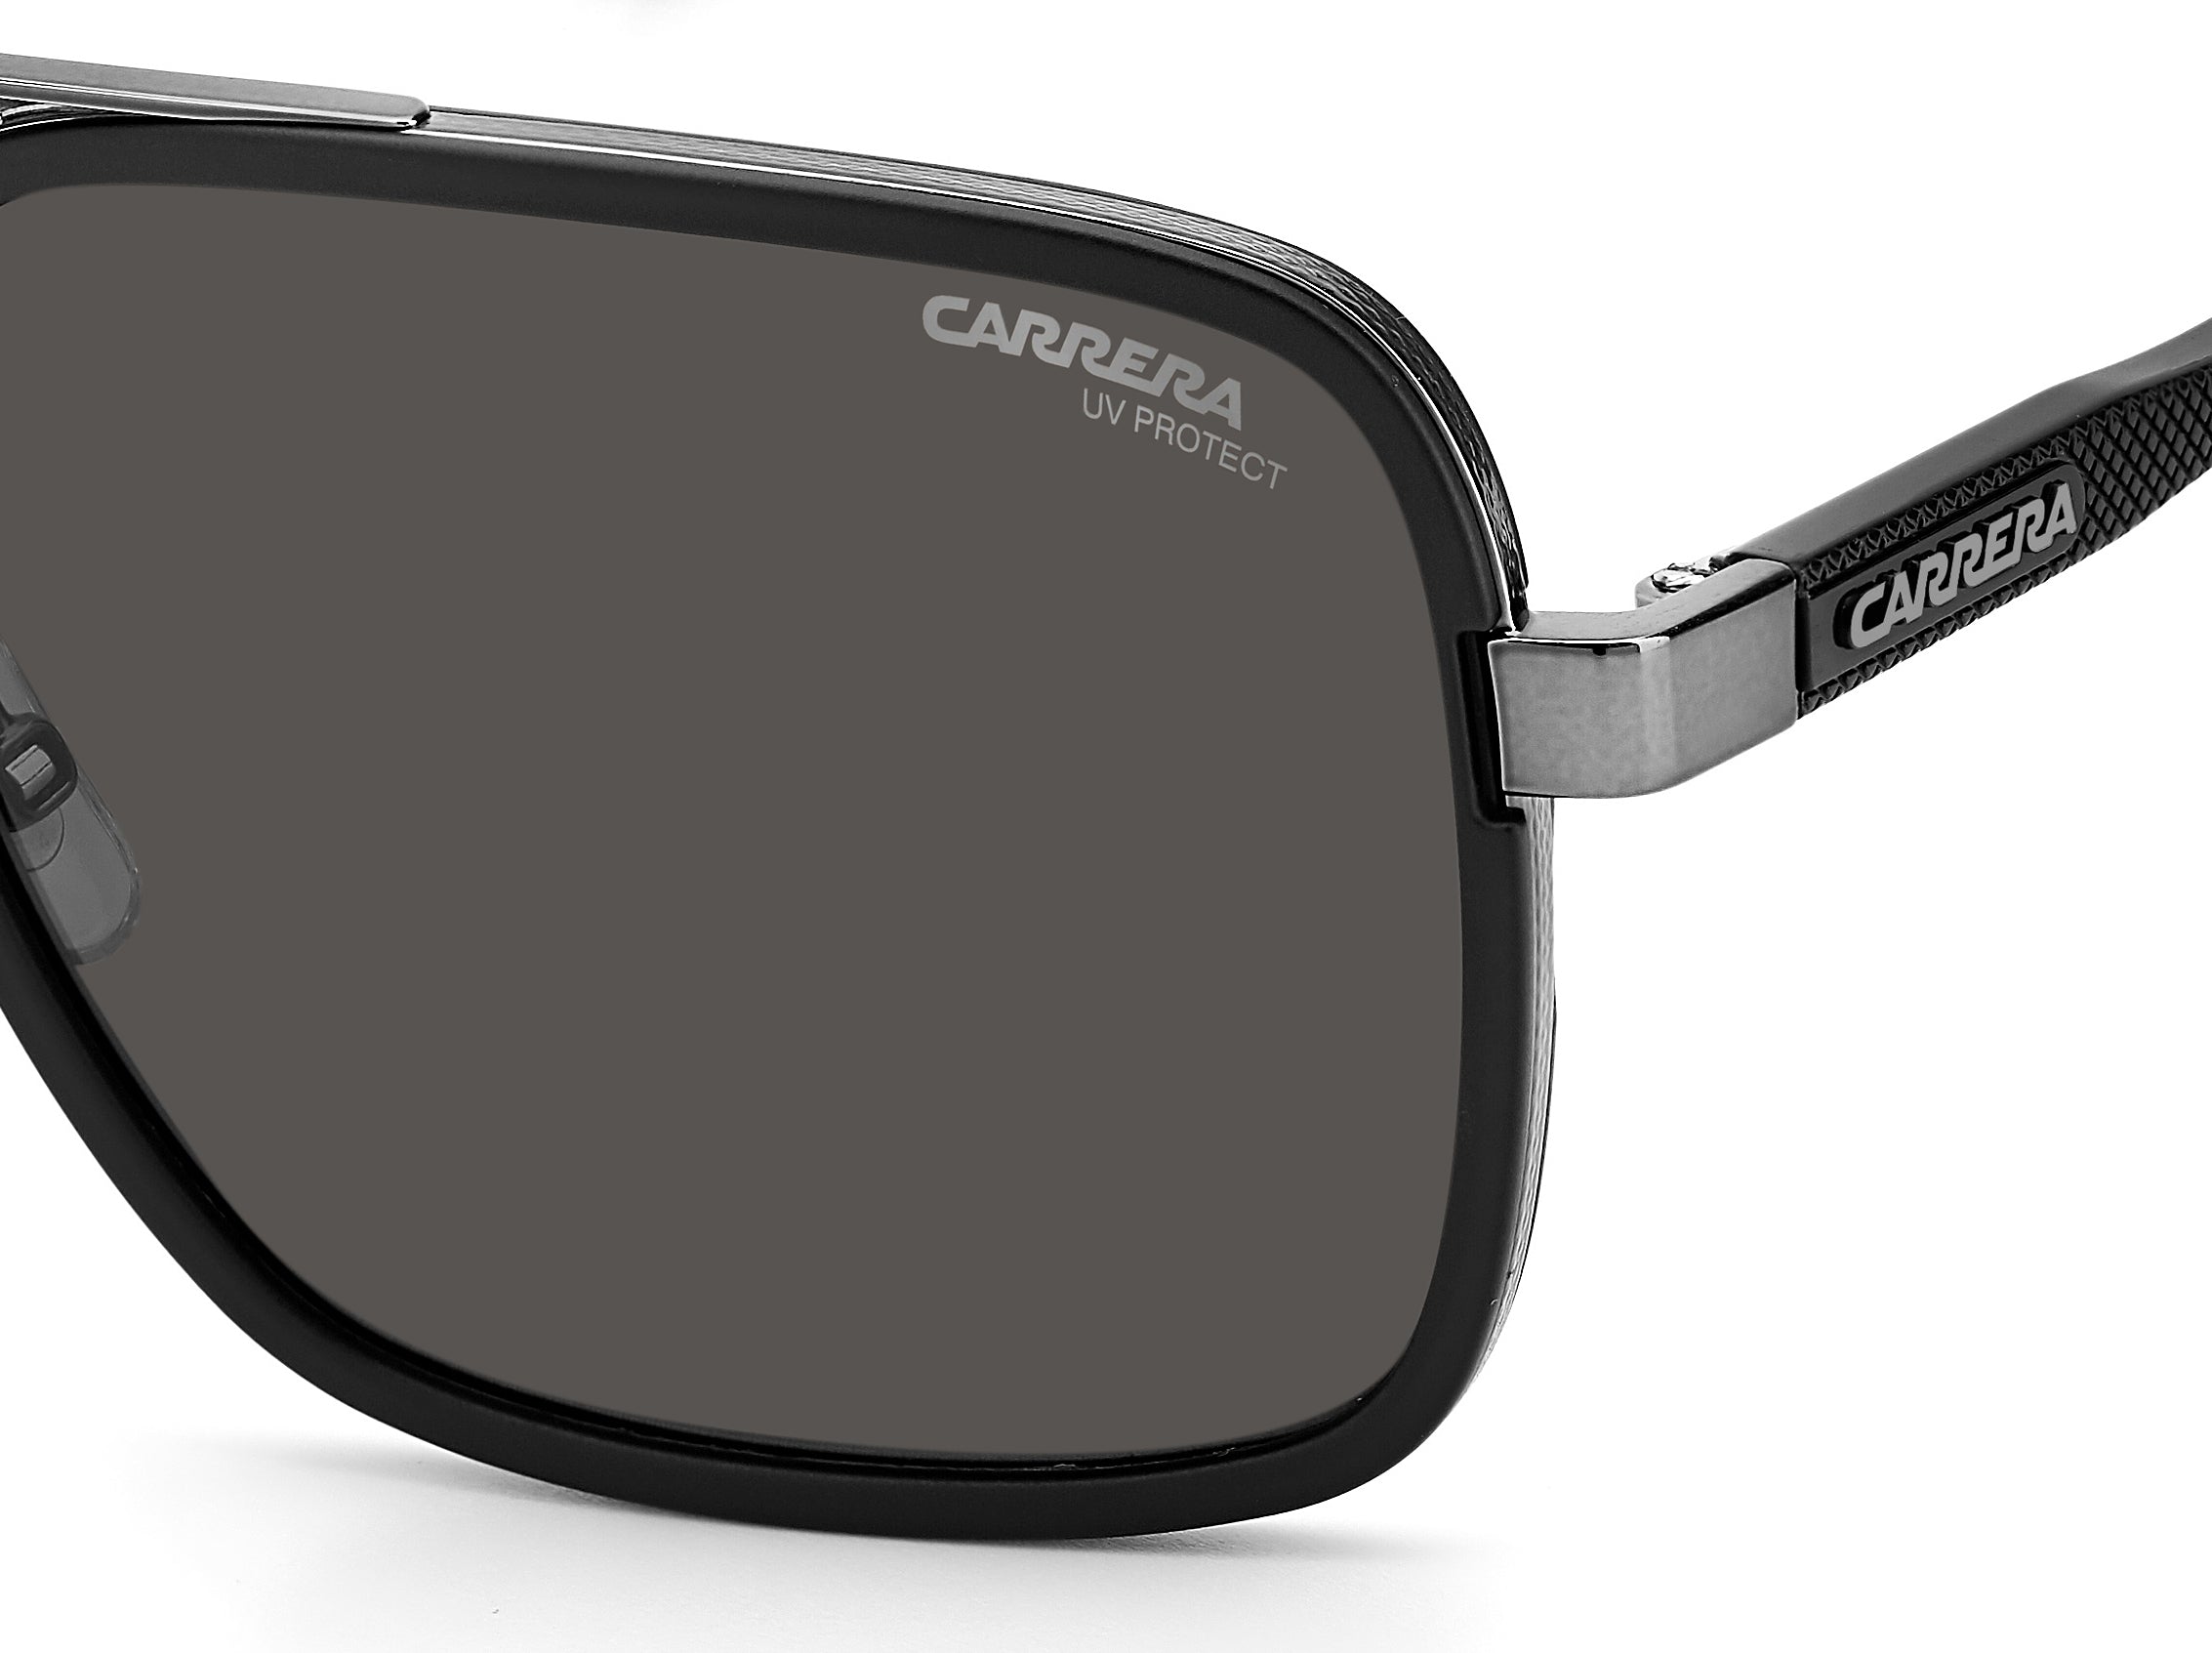 Carrera Square Sunglasses 256/S – 